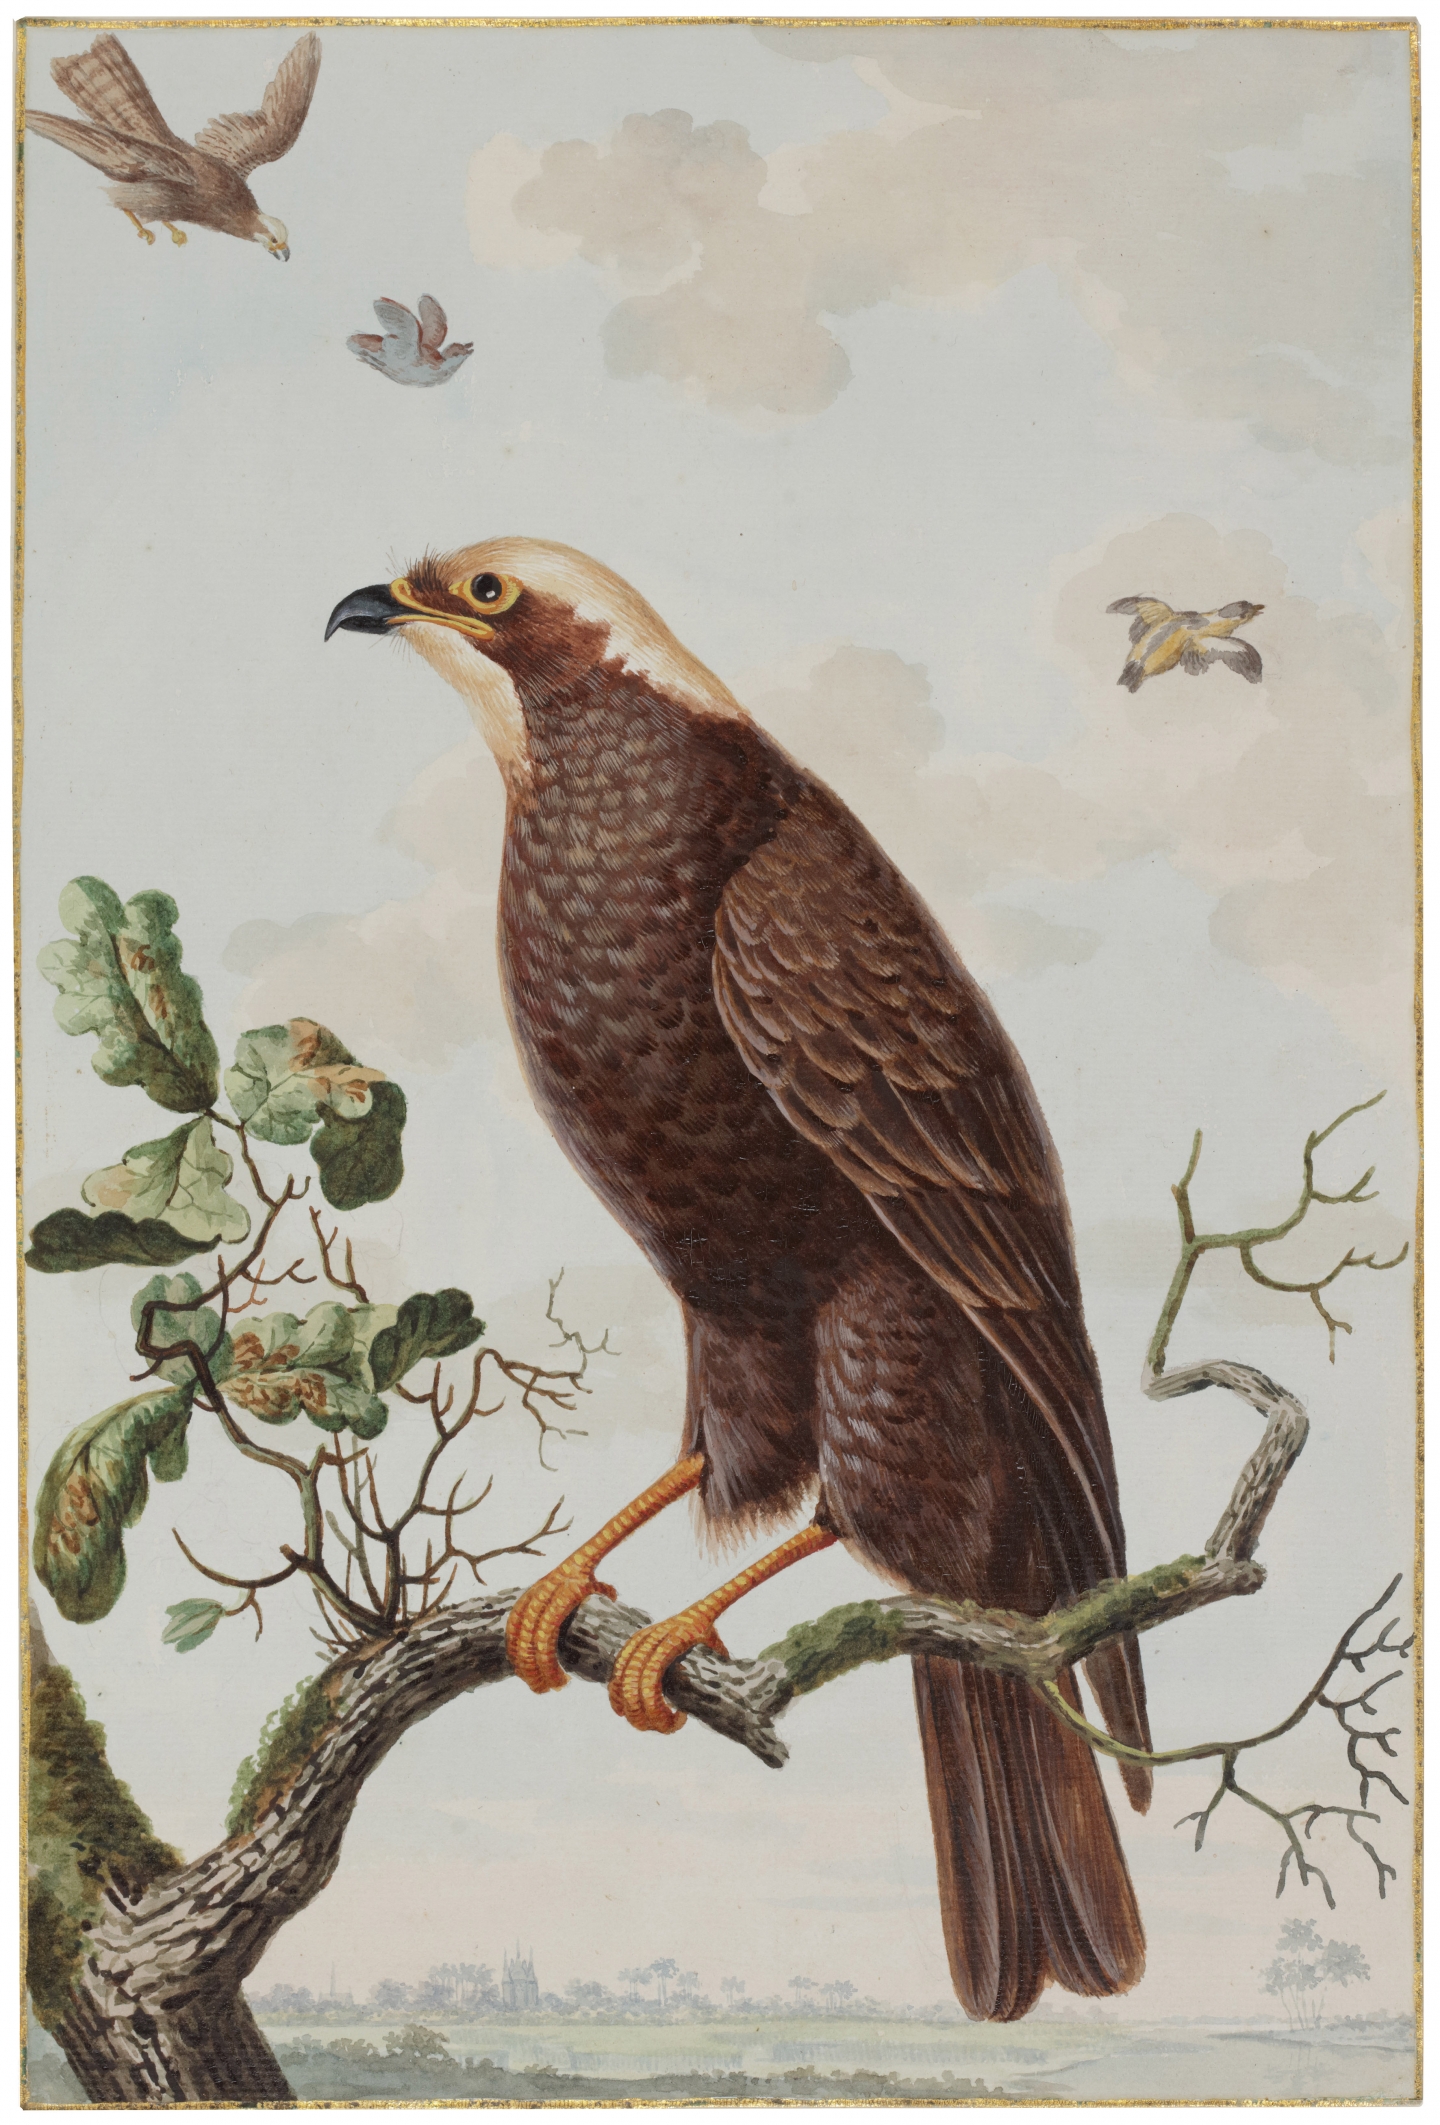 Jabez Heenck (The Hague, 1752-1782 Leyden) Een ordinaire wouw (A harrier)